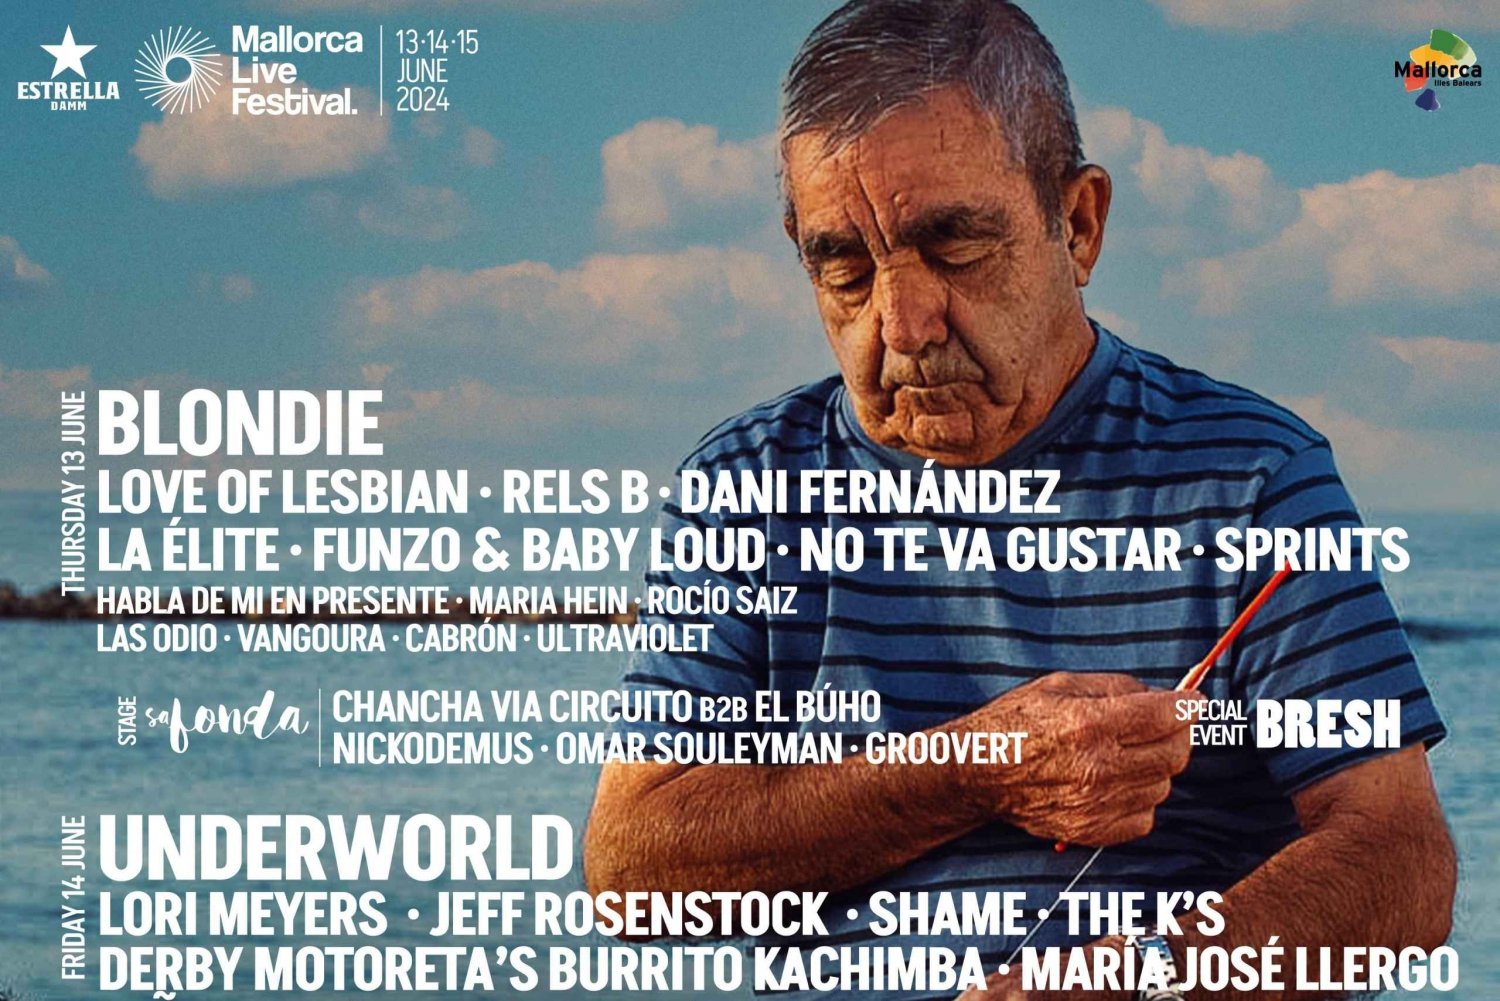 Adgangsbillet til Mallorca Live Festival